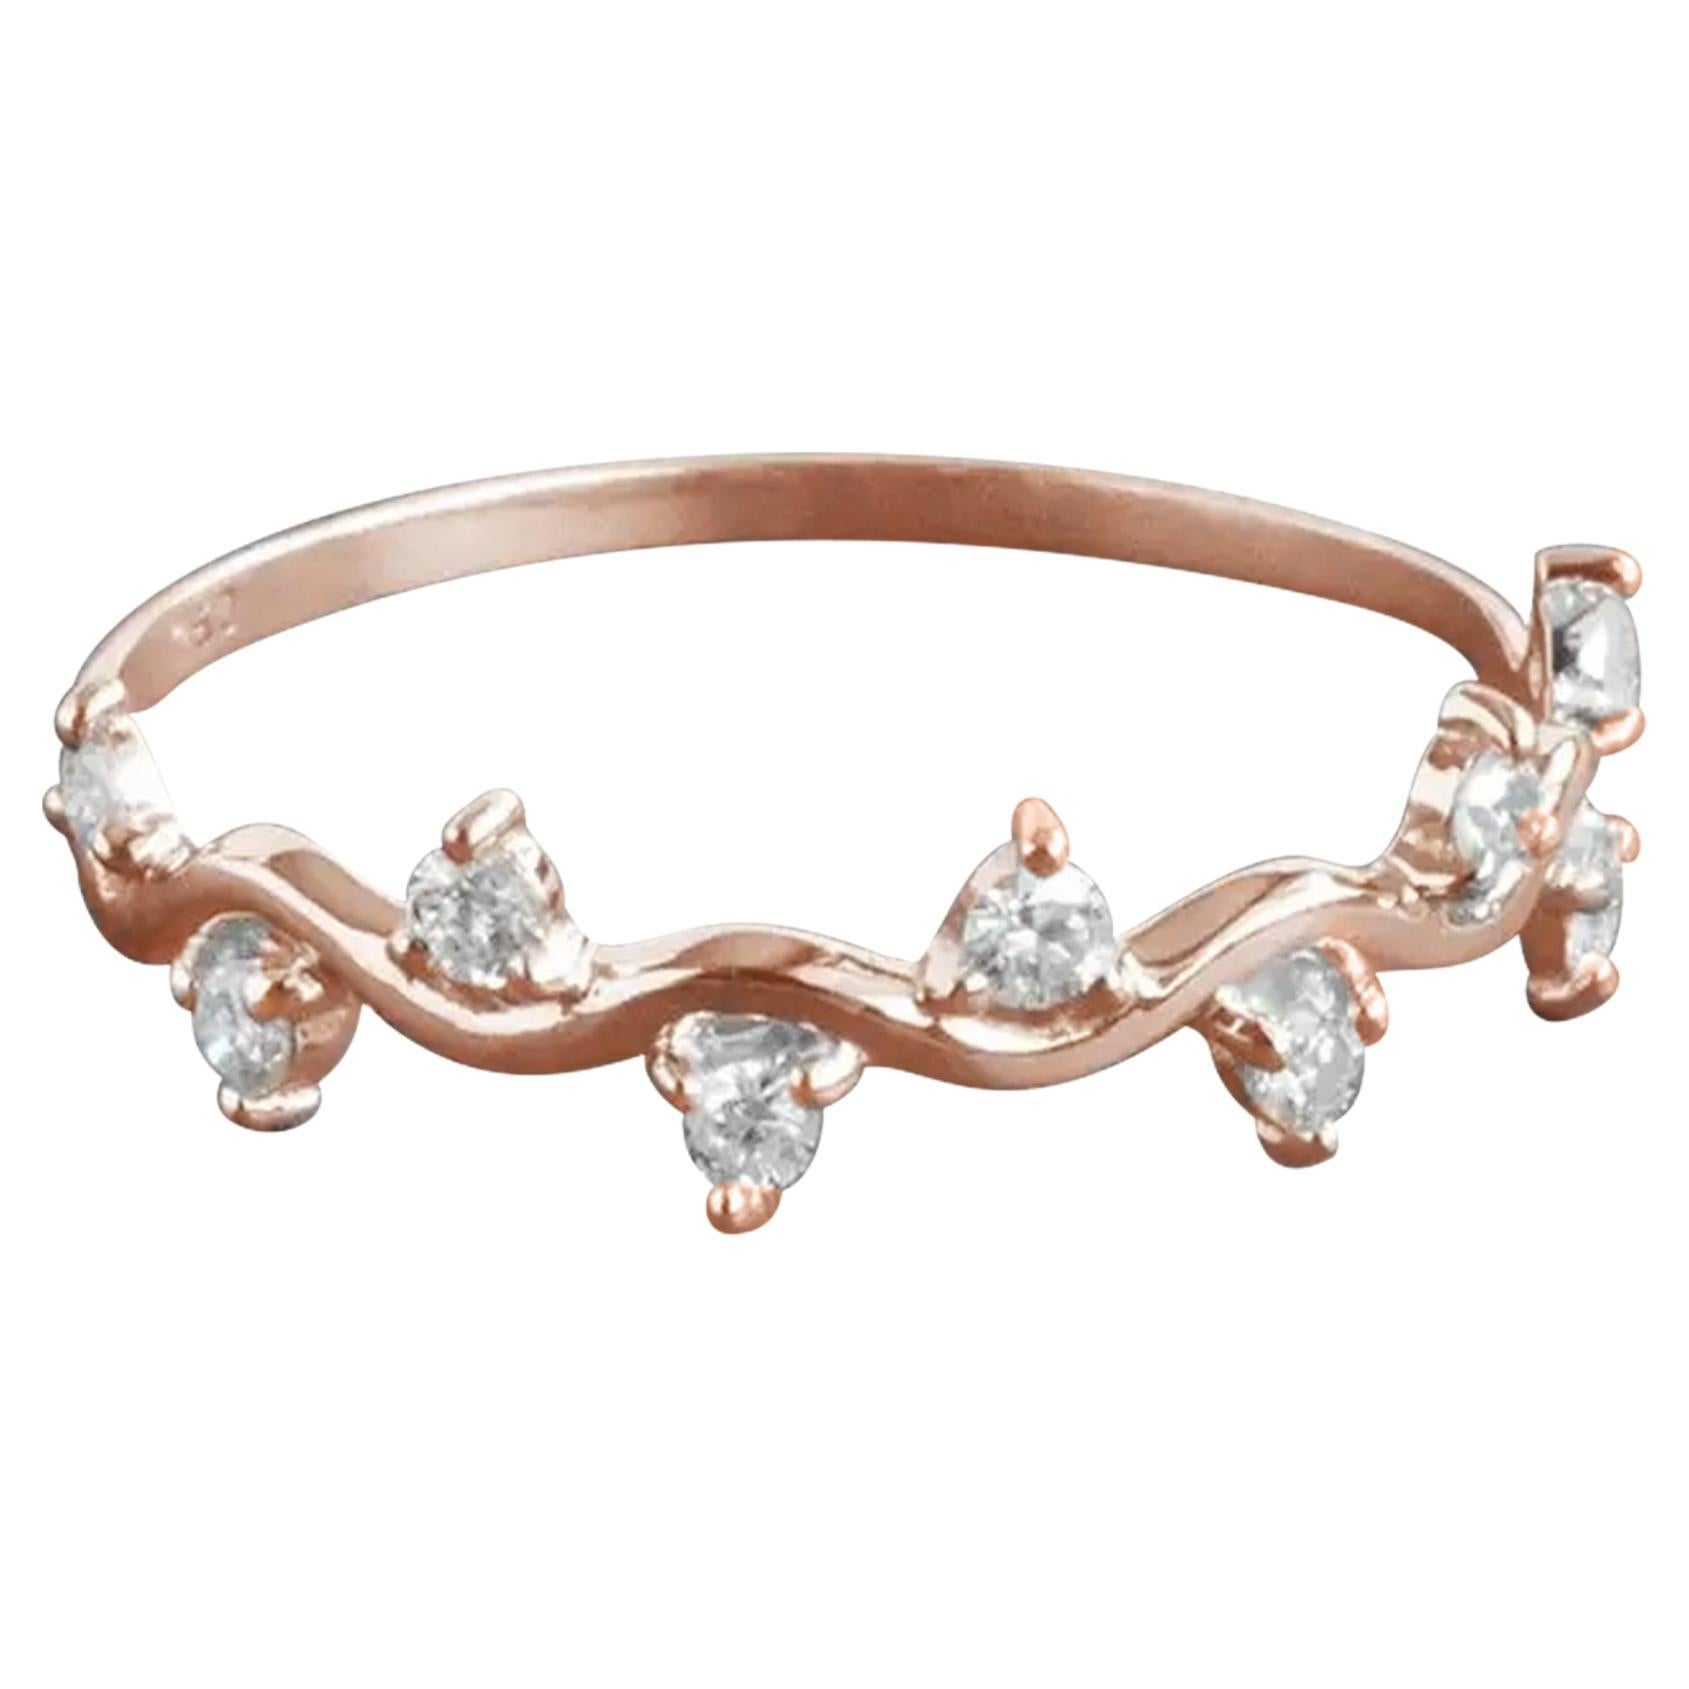 For Sale:  14k Gold Diamond Ring Cluster Diamond Ring Half Eternity Gift Ring 2